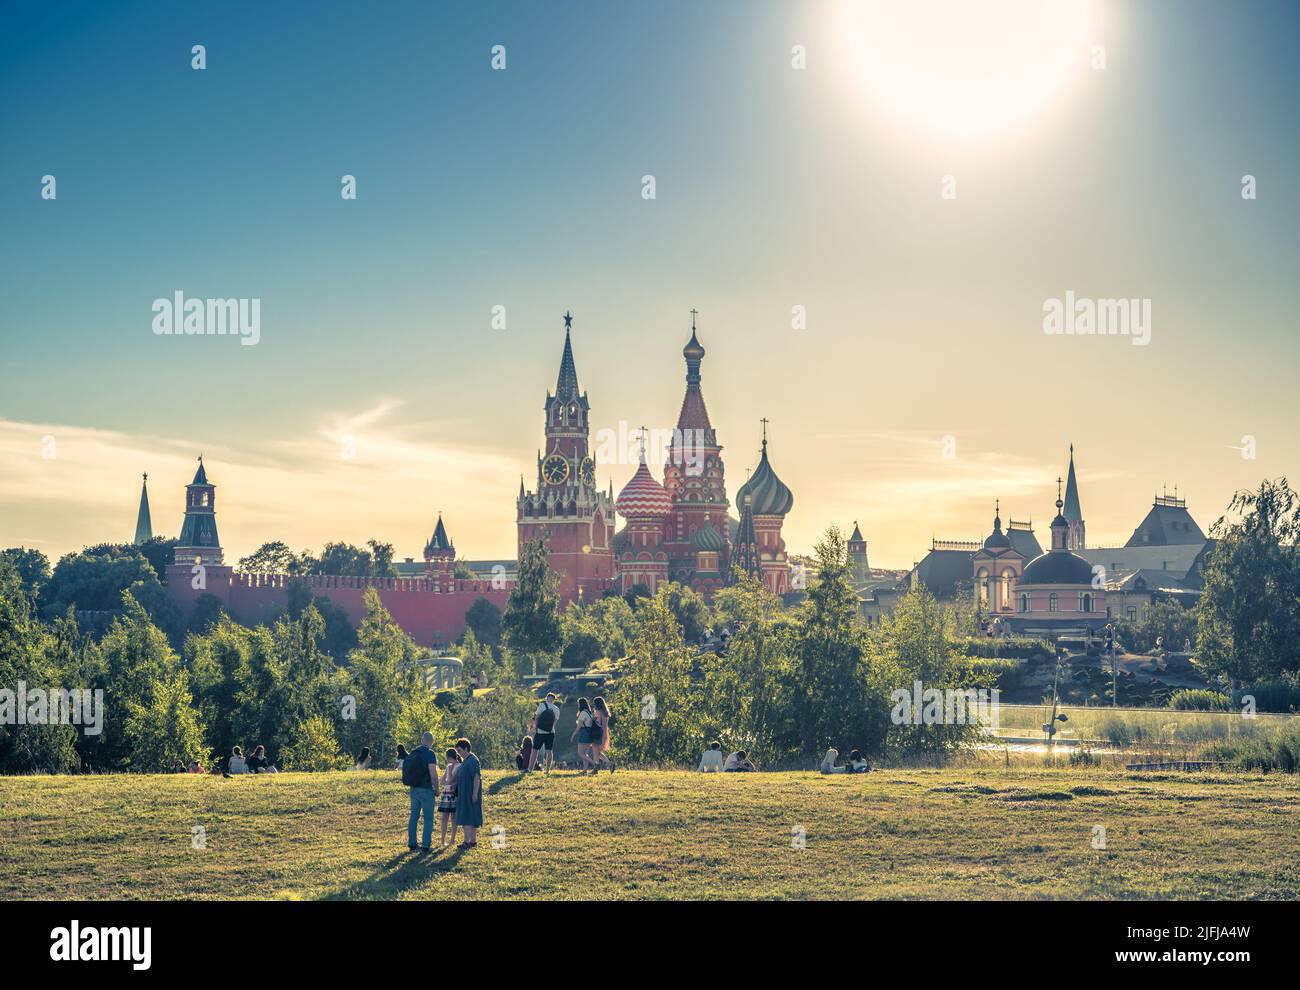 Moskau - 28. Jun 2022: Menschen ruhen im Zaryadye Park in Moskau, Russland. Dieser schöne Ort ist Touristenattraktion von Moskau. Sonniger Blick auf St. Basil Cathedr Stockfoto